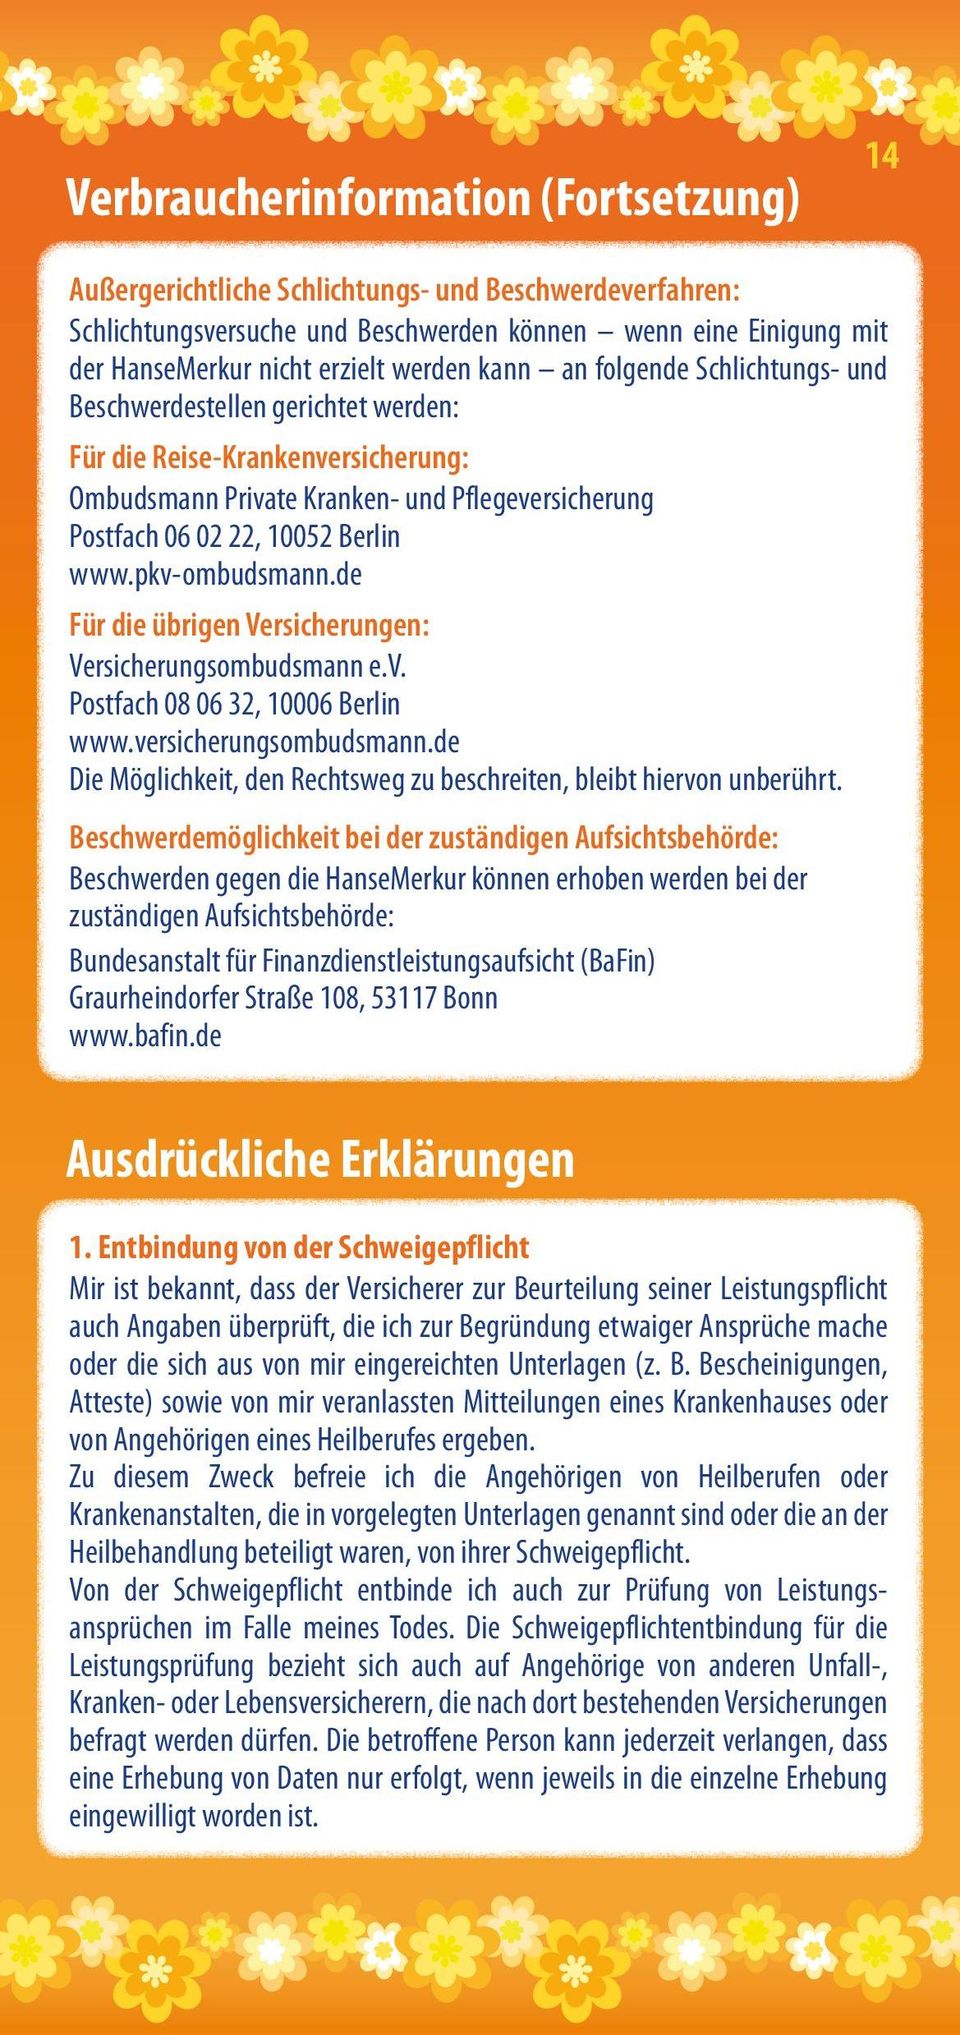 pkv-ombudsmann.de Für die übrigen Versicherungen: Versicherungsombudsmann e.v. Postfach 08 06 32, 10006 Berlin www.versicherungsombudsmann.